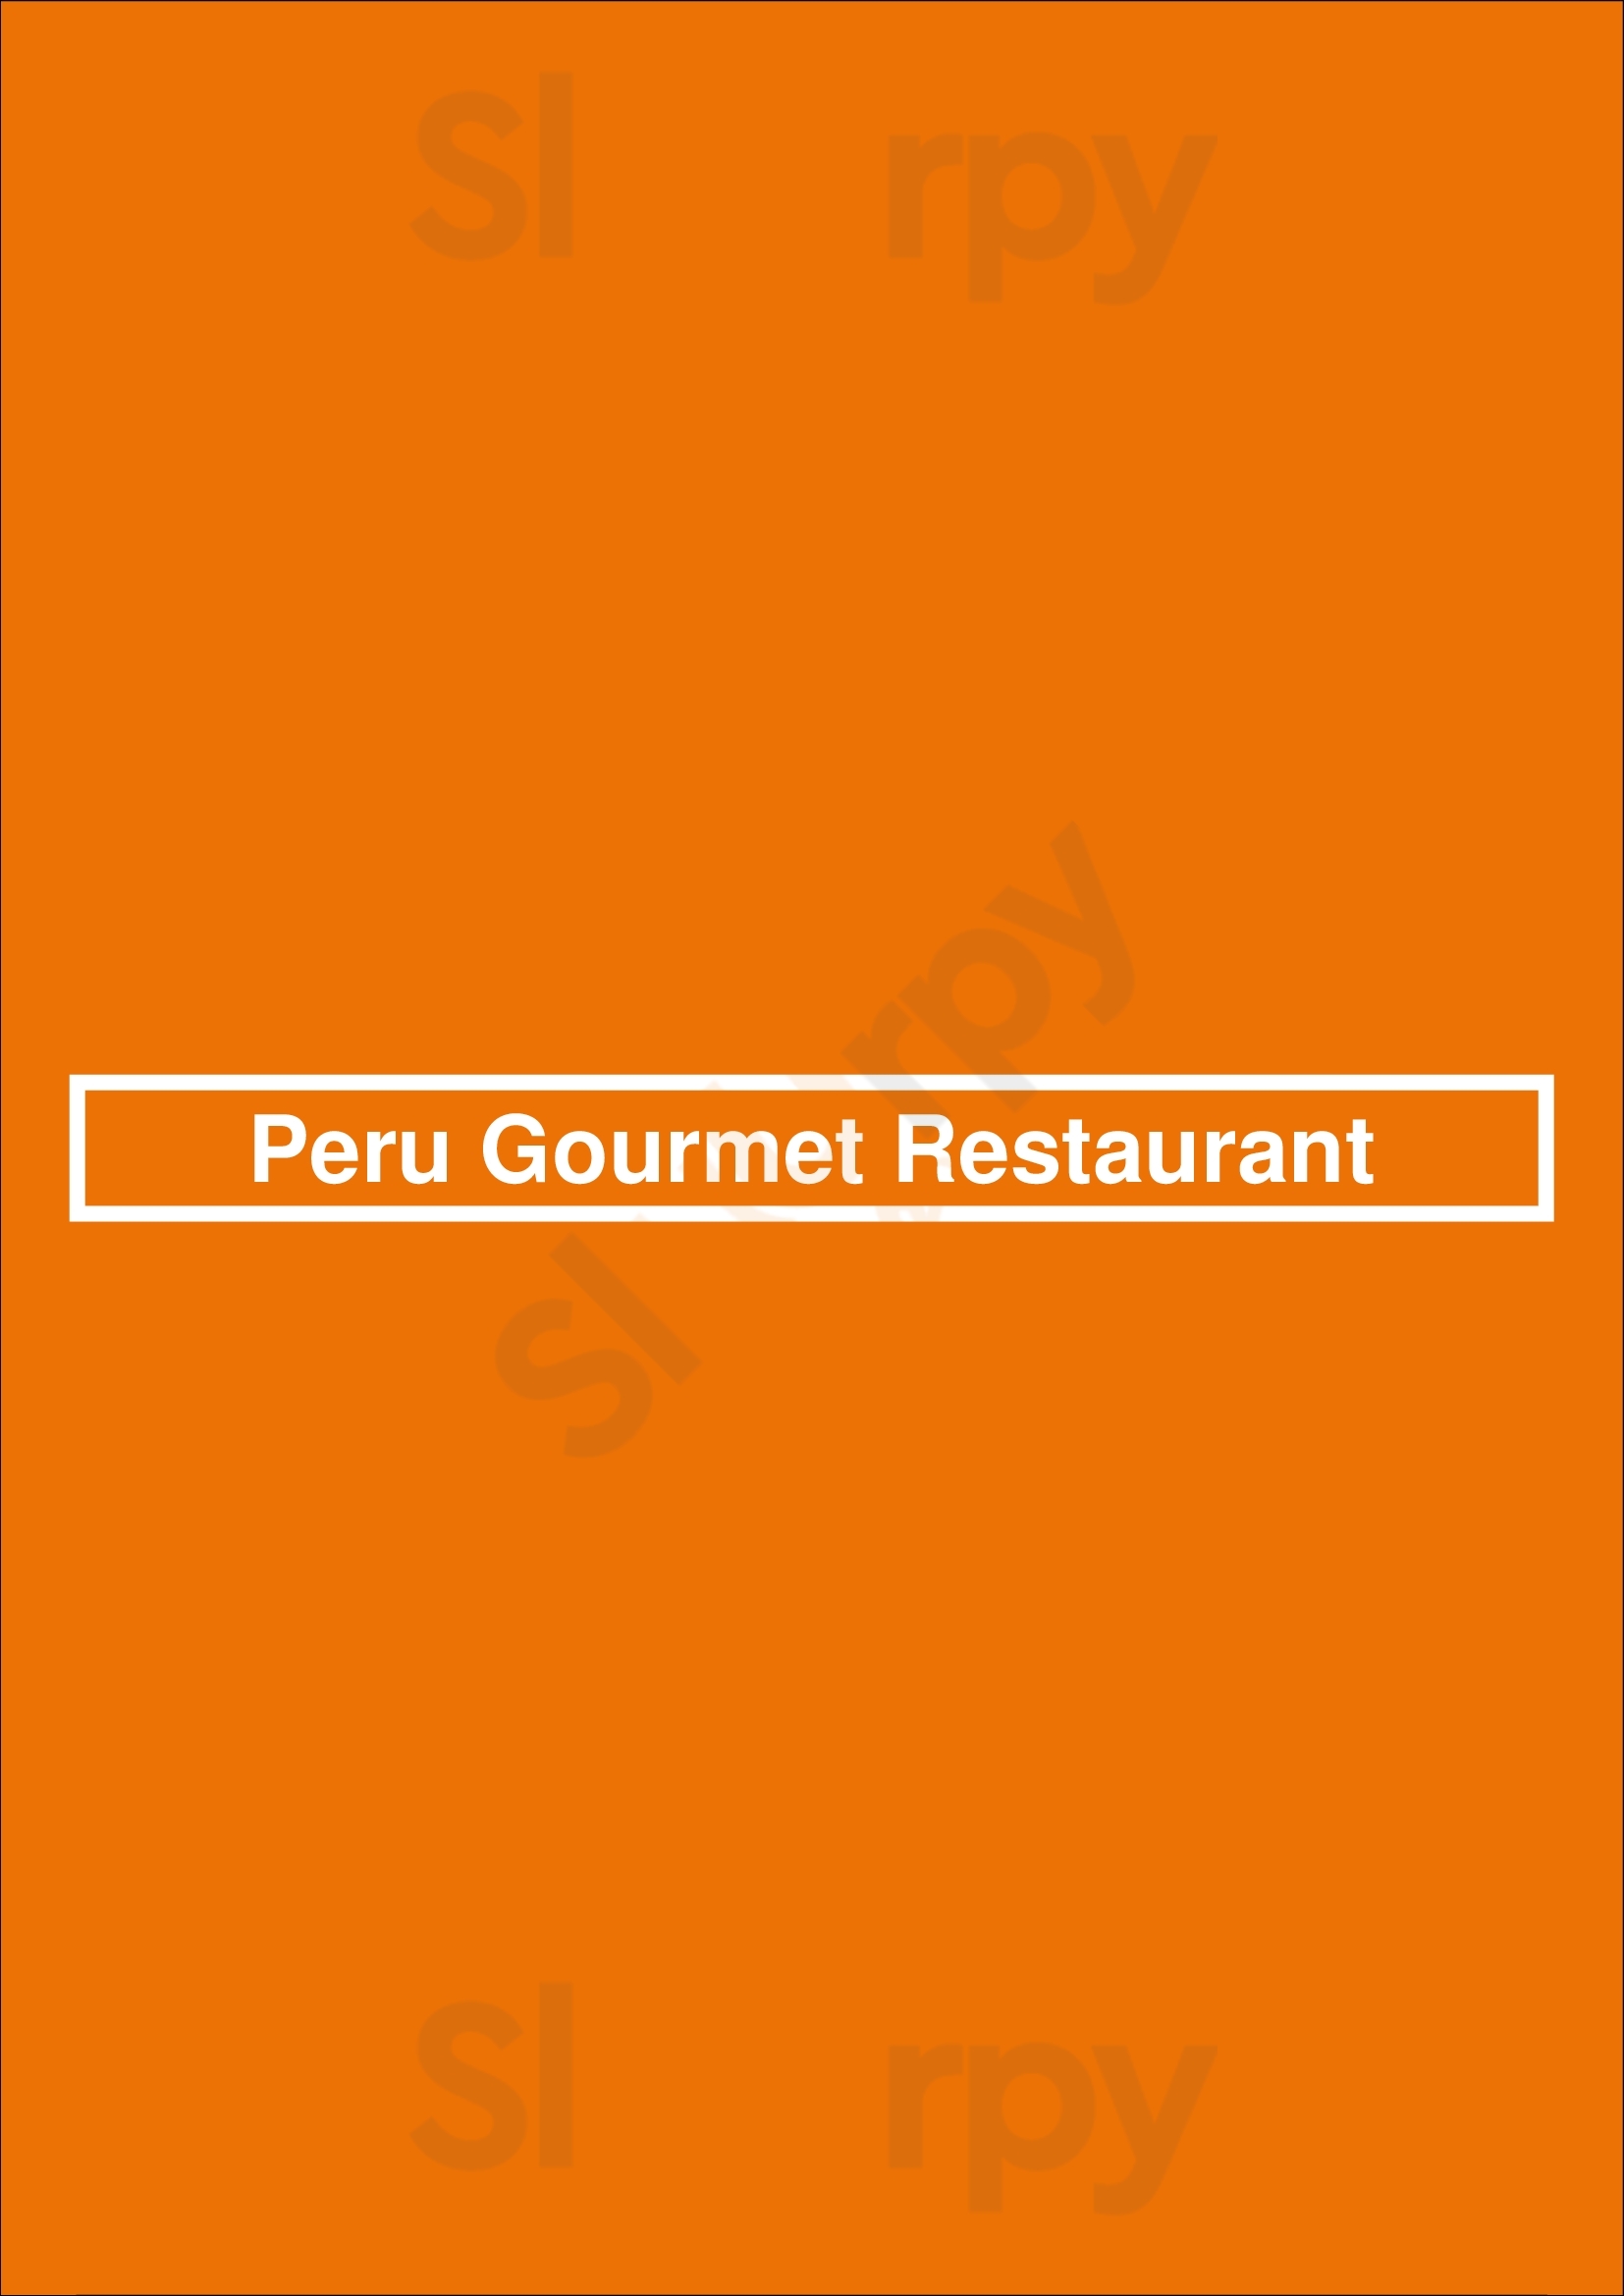 Peru Gourmet Restaurant Houston Menu - 1